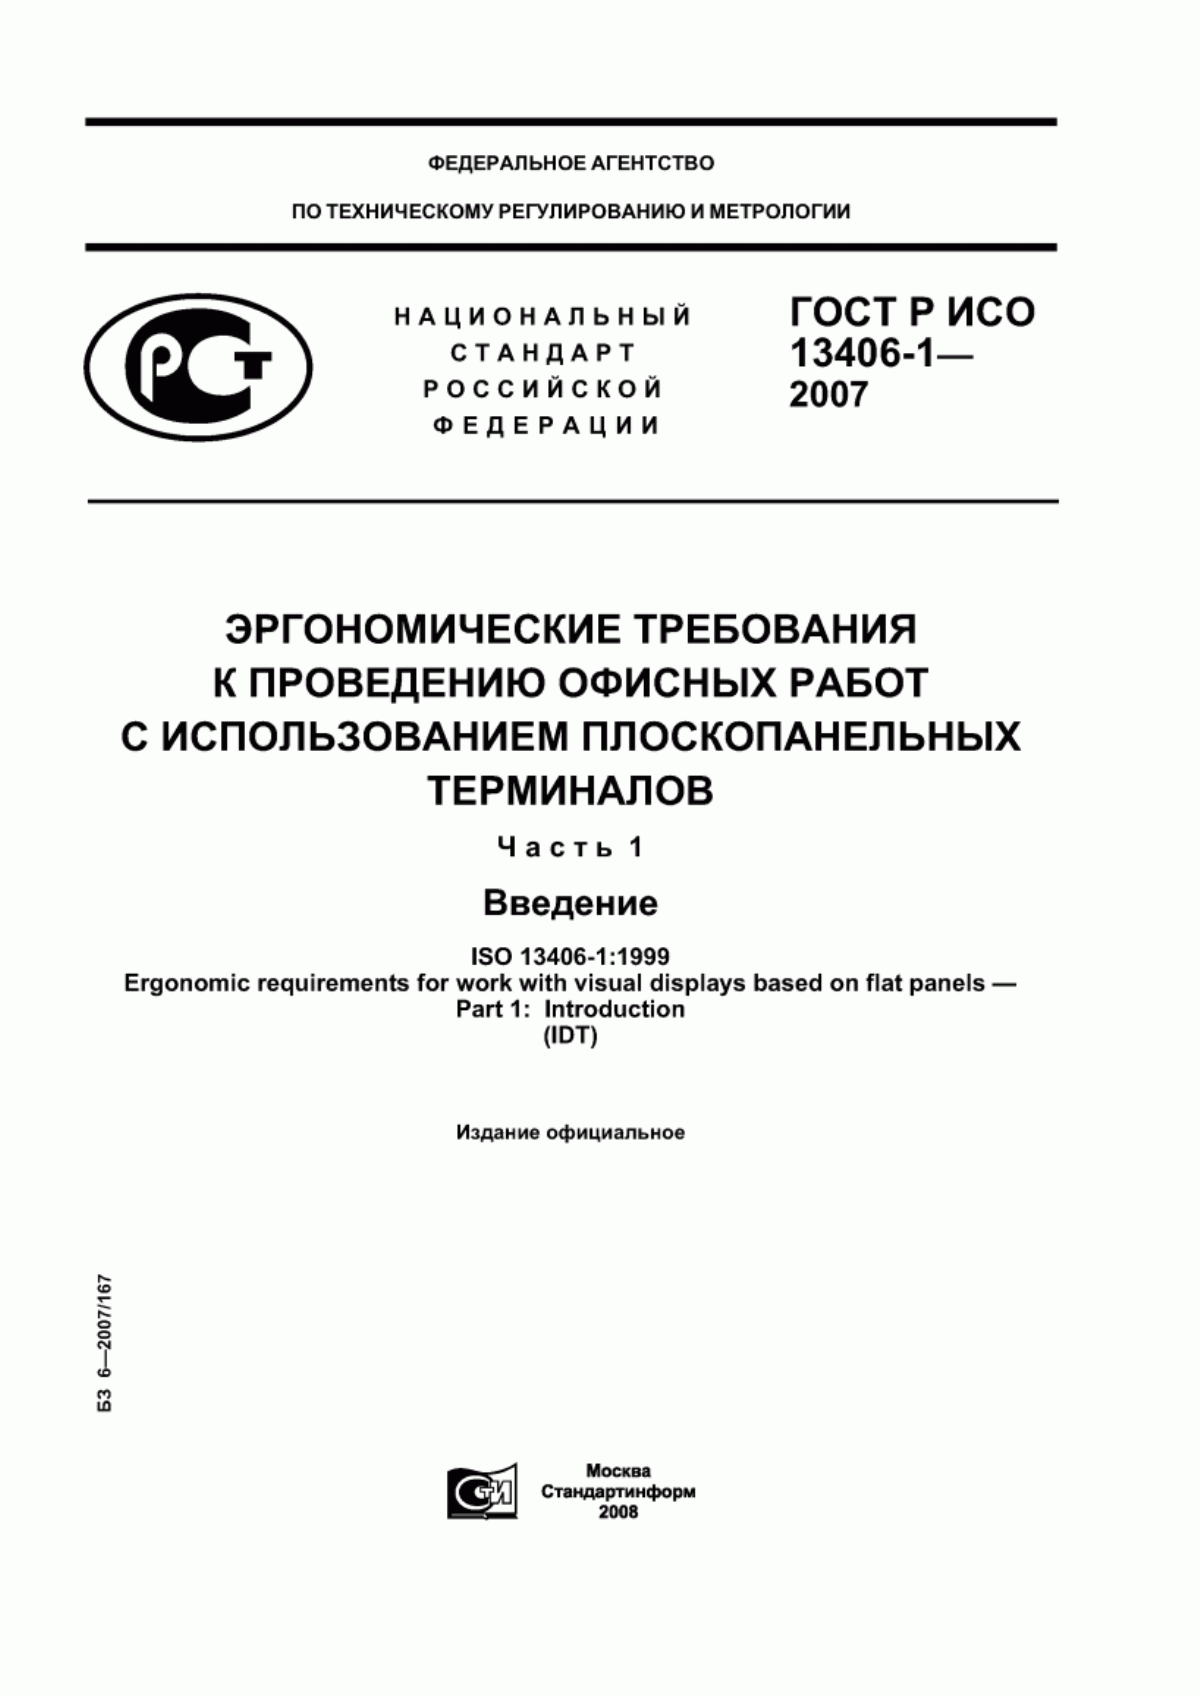 ГОСТ Р ИСО 13406-1-2007 Эргономические требования к проведению офисных работ с использованием плоскопанельных терминалов. Часть 1. Введение